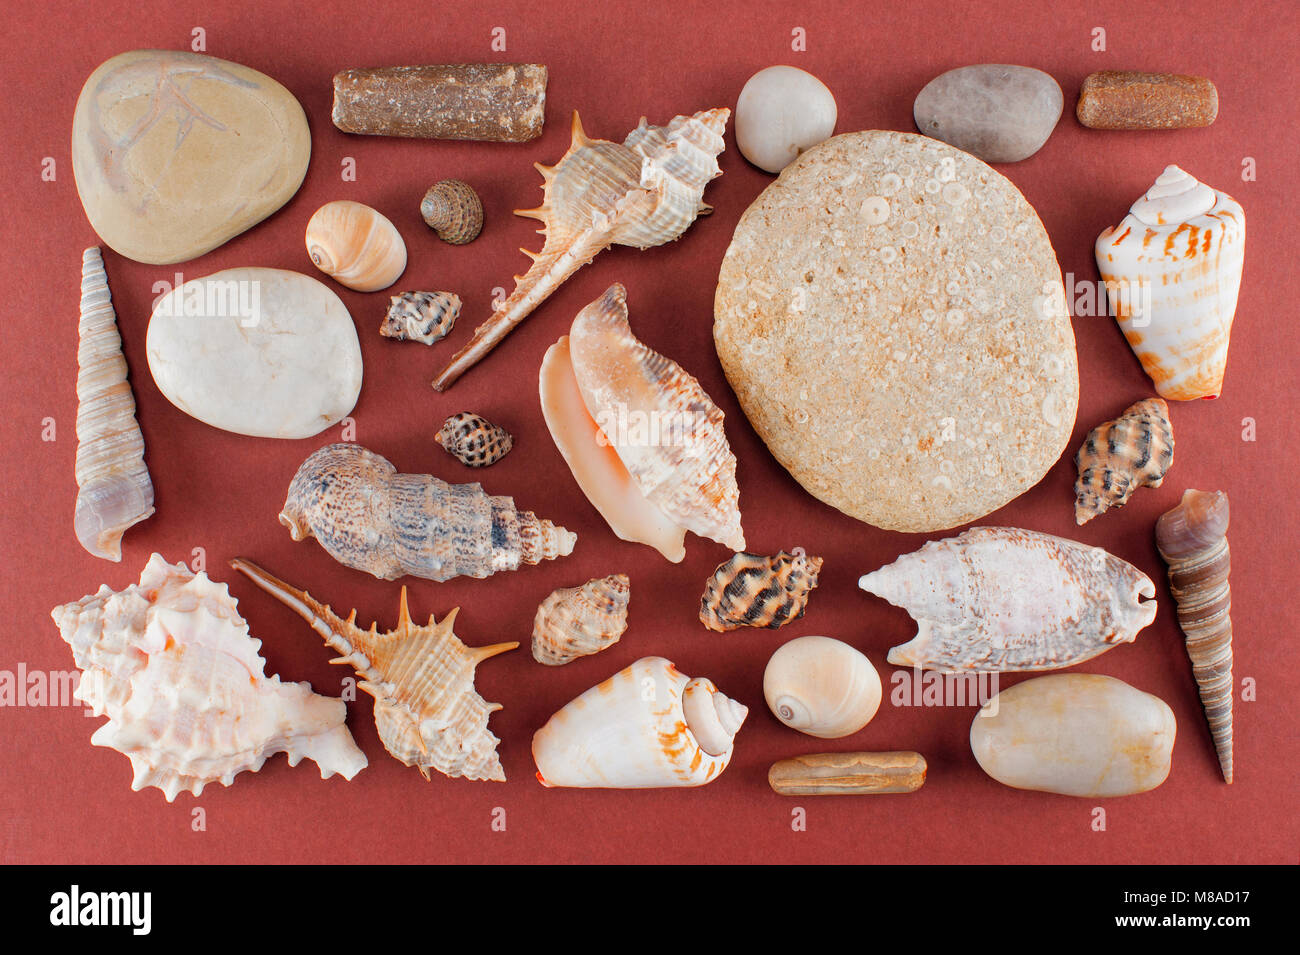 Conjunto de varias conchas de mar y piedras en el fondo de color rojo-marrón, laicos plana Foto de stock